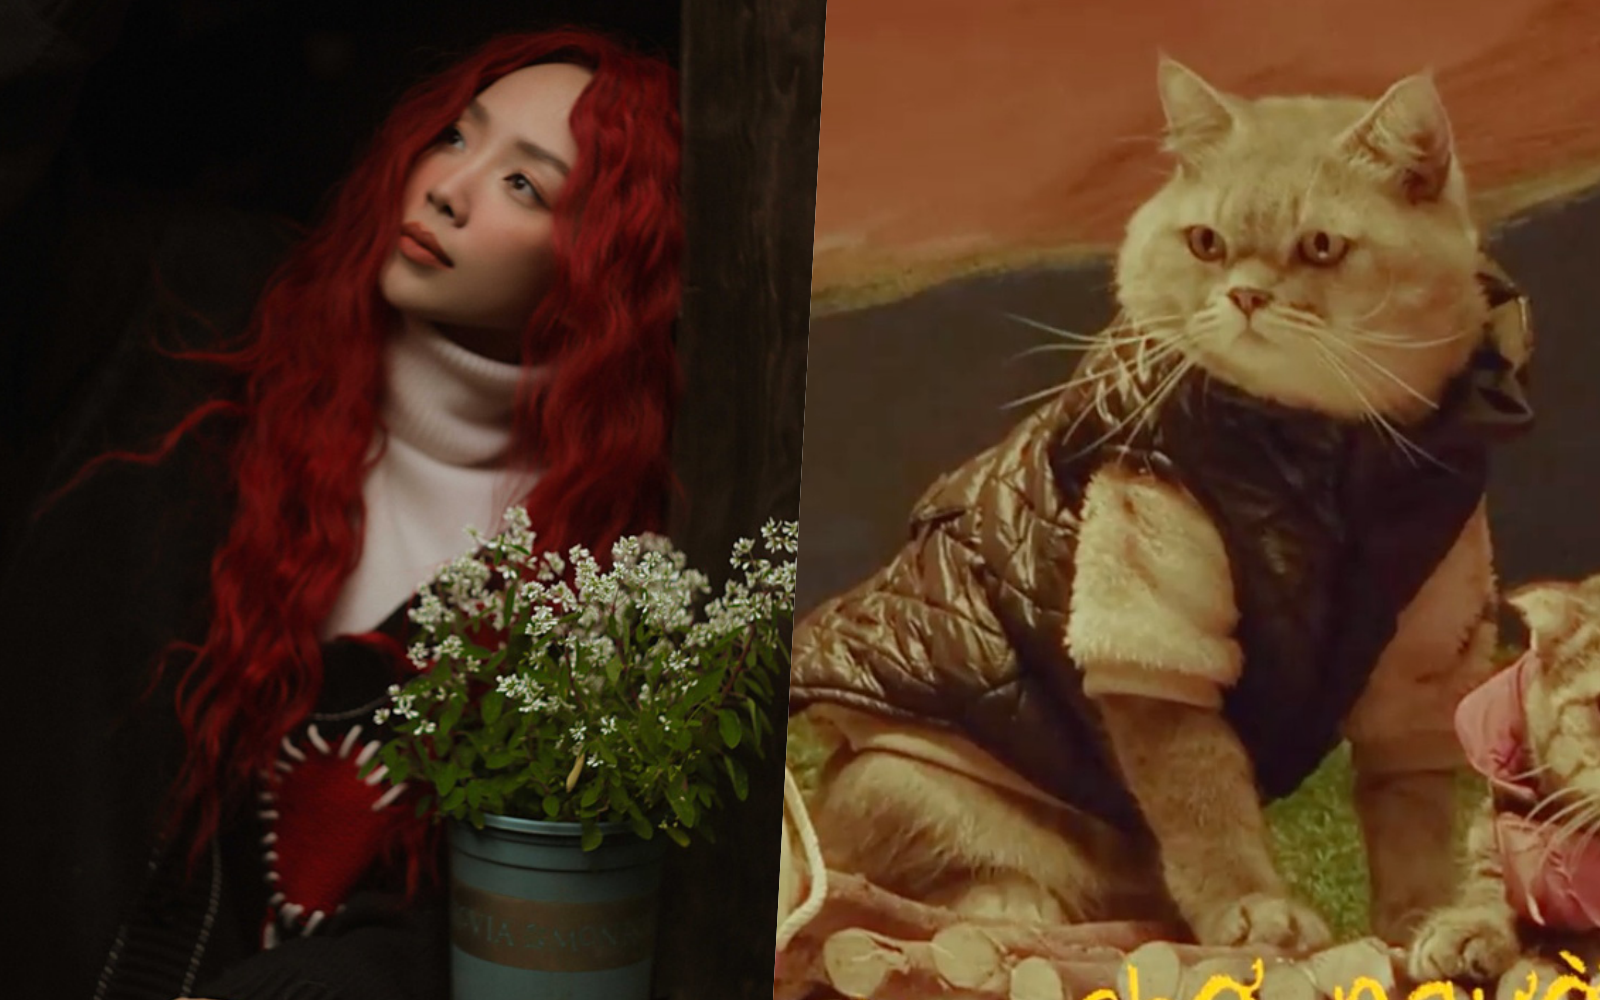 MV mới của Tóc Tiên chỉ toàn mèo với mèo, fan tìm “đỏ mắt” vẫn không thấy nữ chính đâu